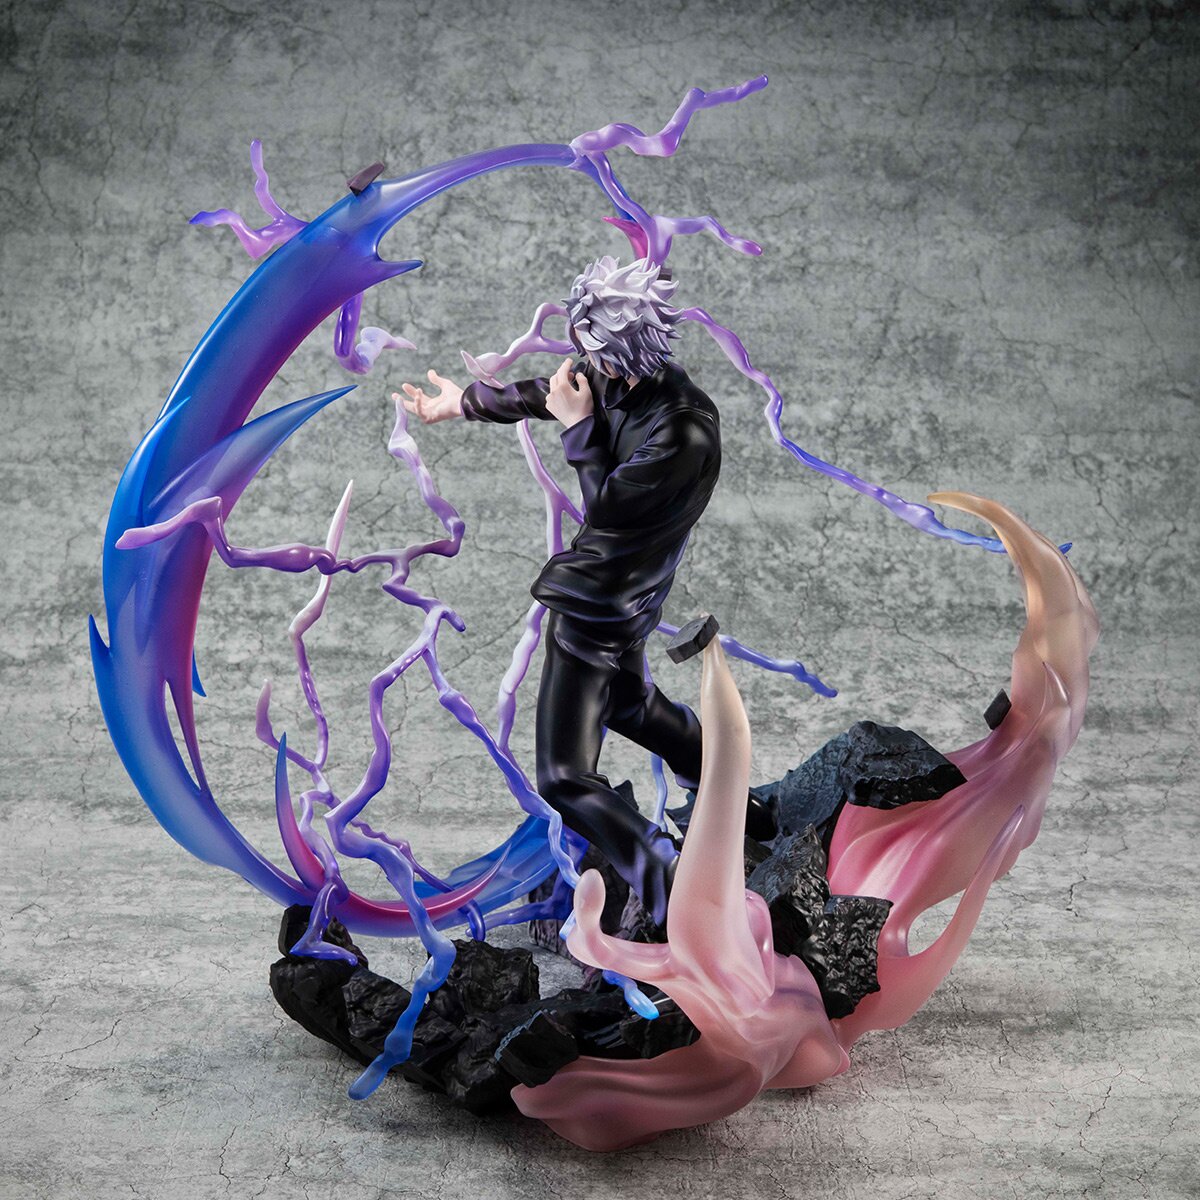 Figurine Satoru Gojo Violet - Jujutsu Kaisen™ en livraison